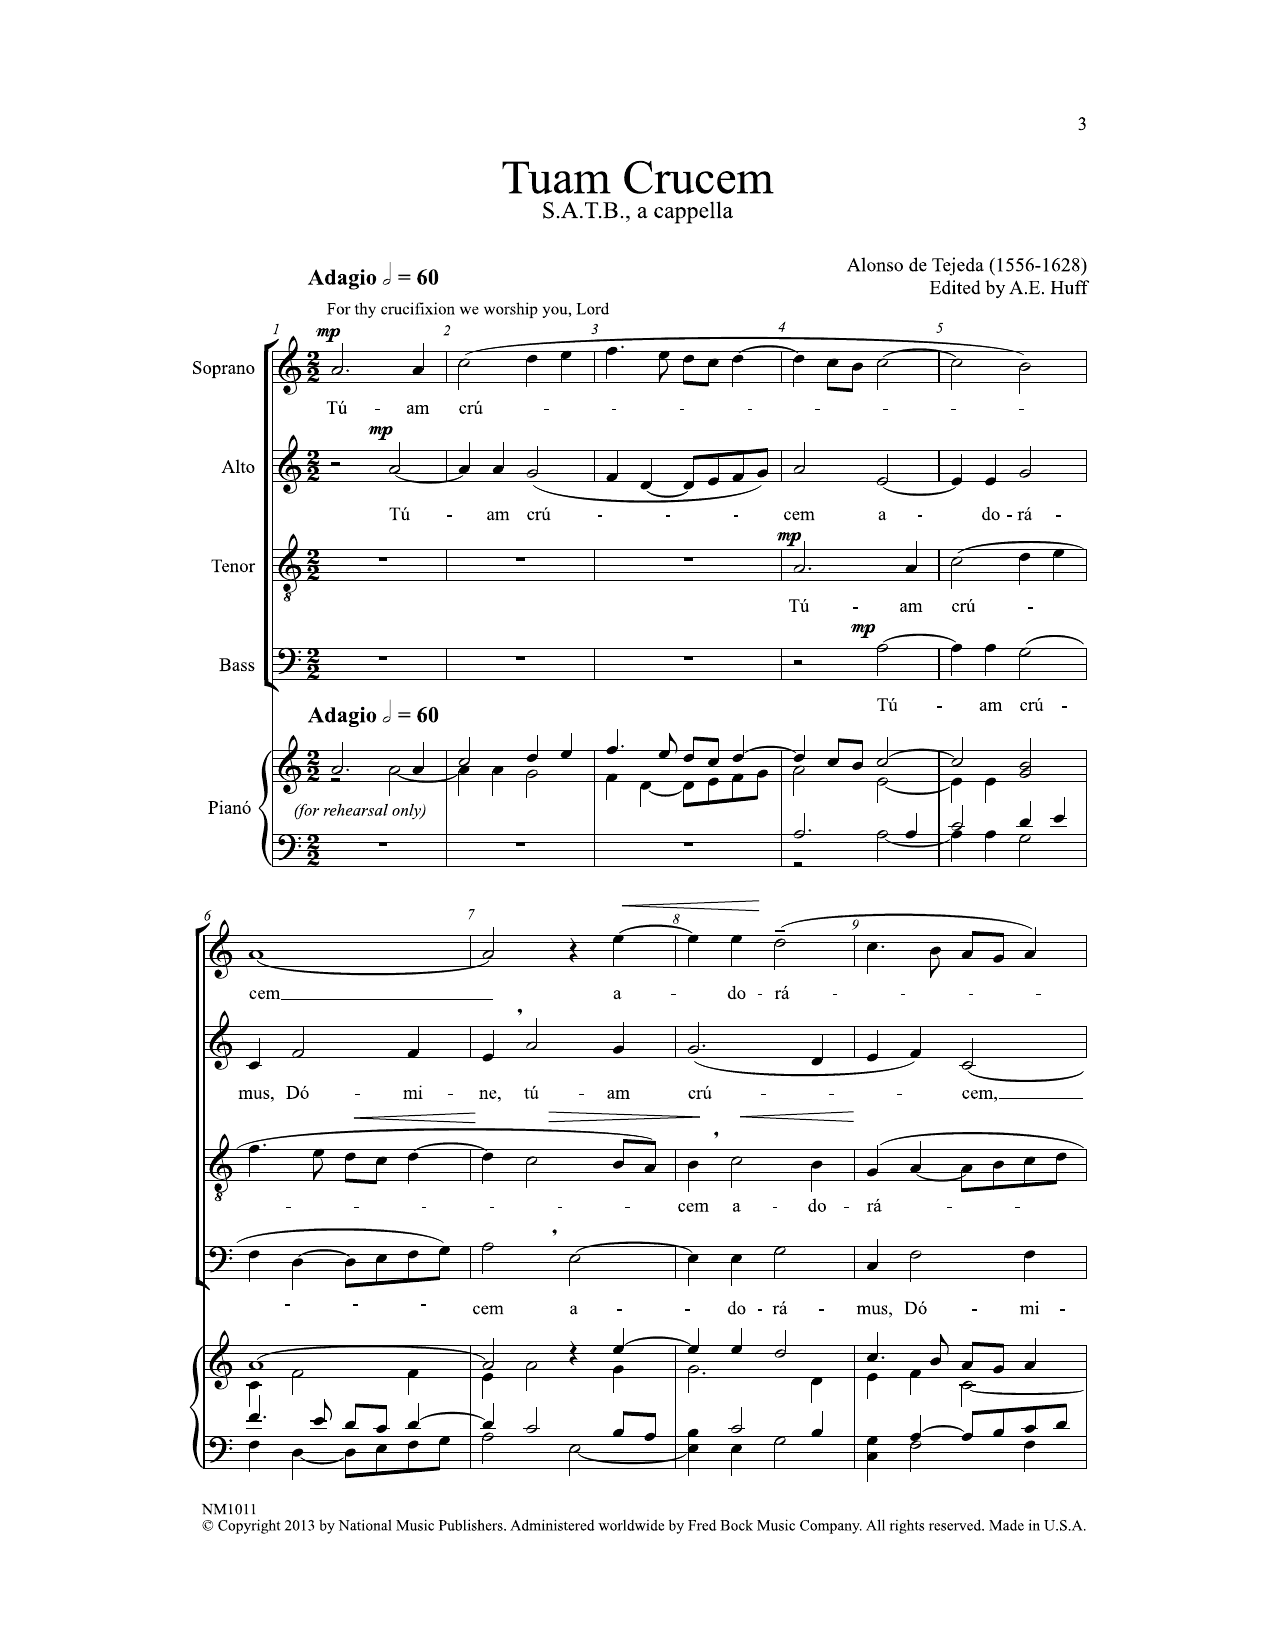 Alonso de Tejeda Tuam Crucem (ed. Arthur E. Huff) sheet music notes and chords arranged for SATB Choir